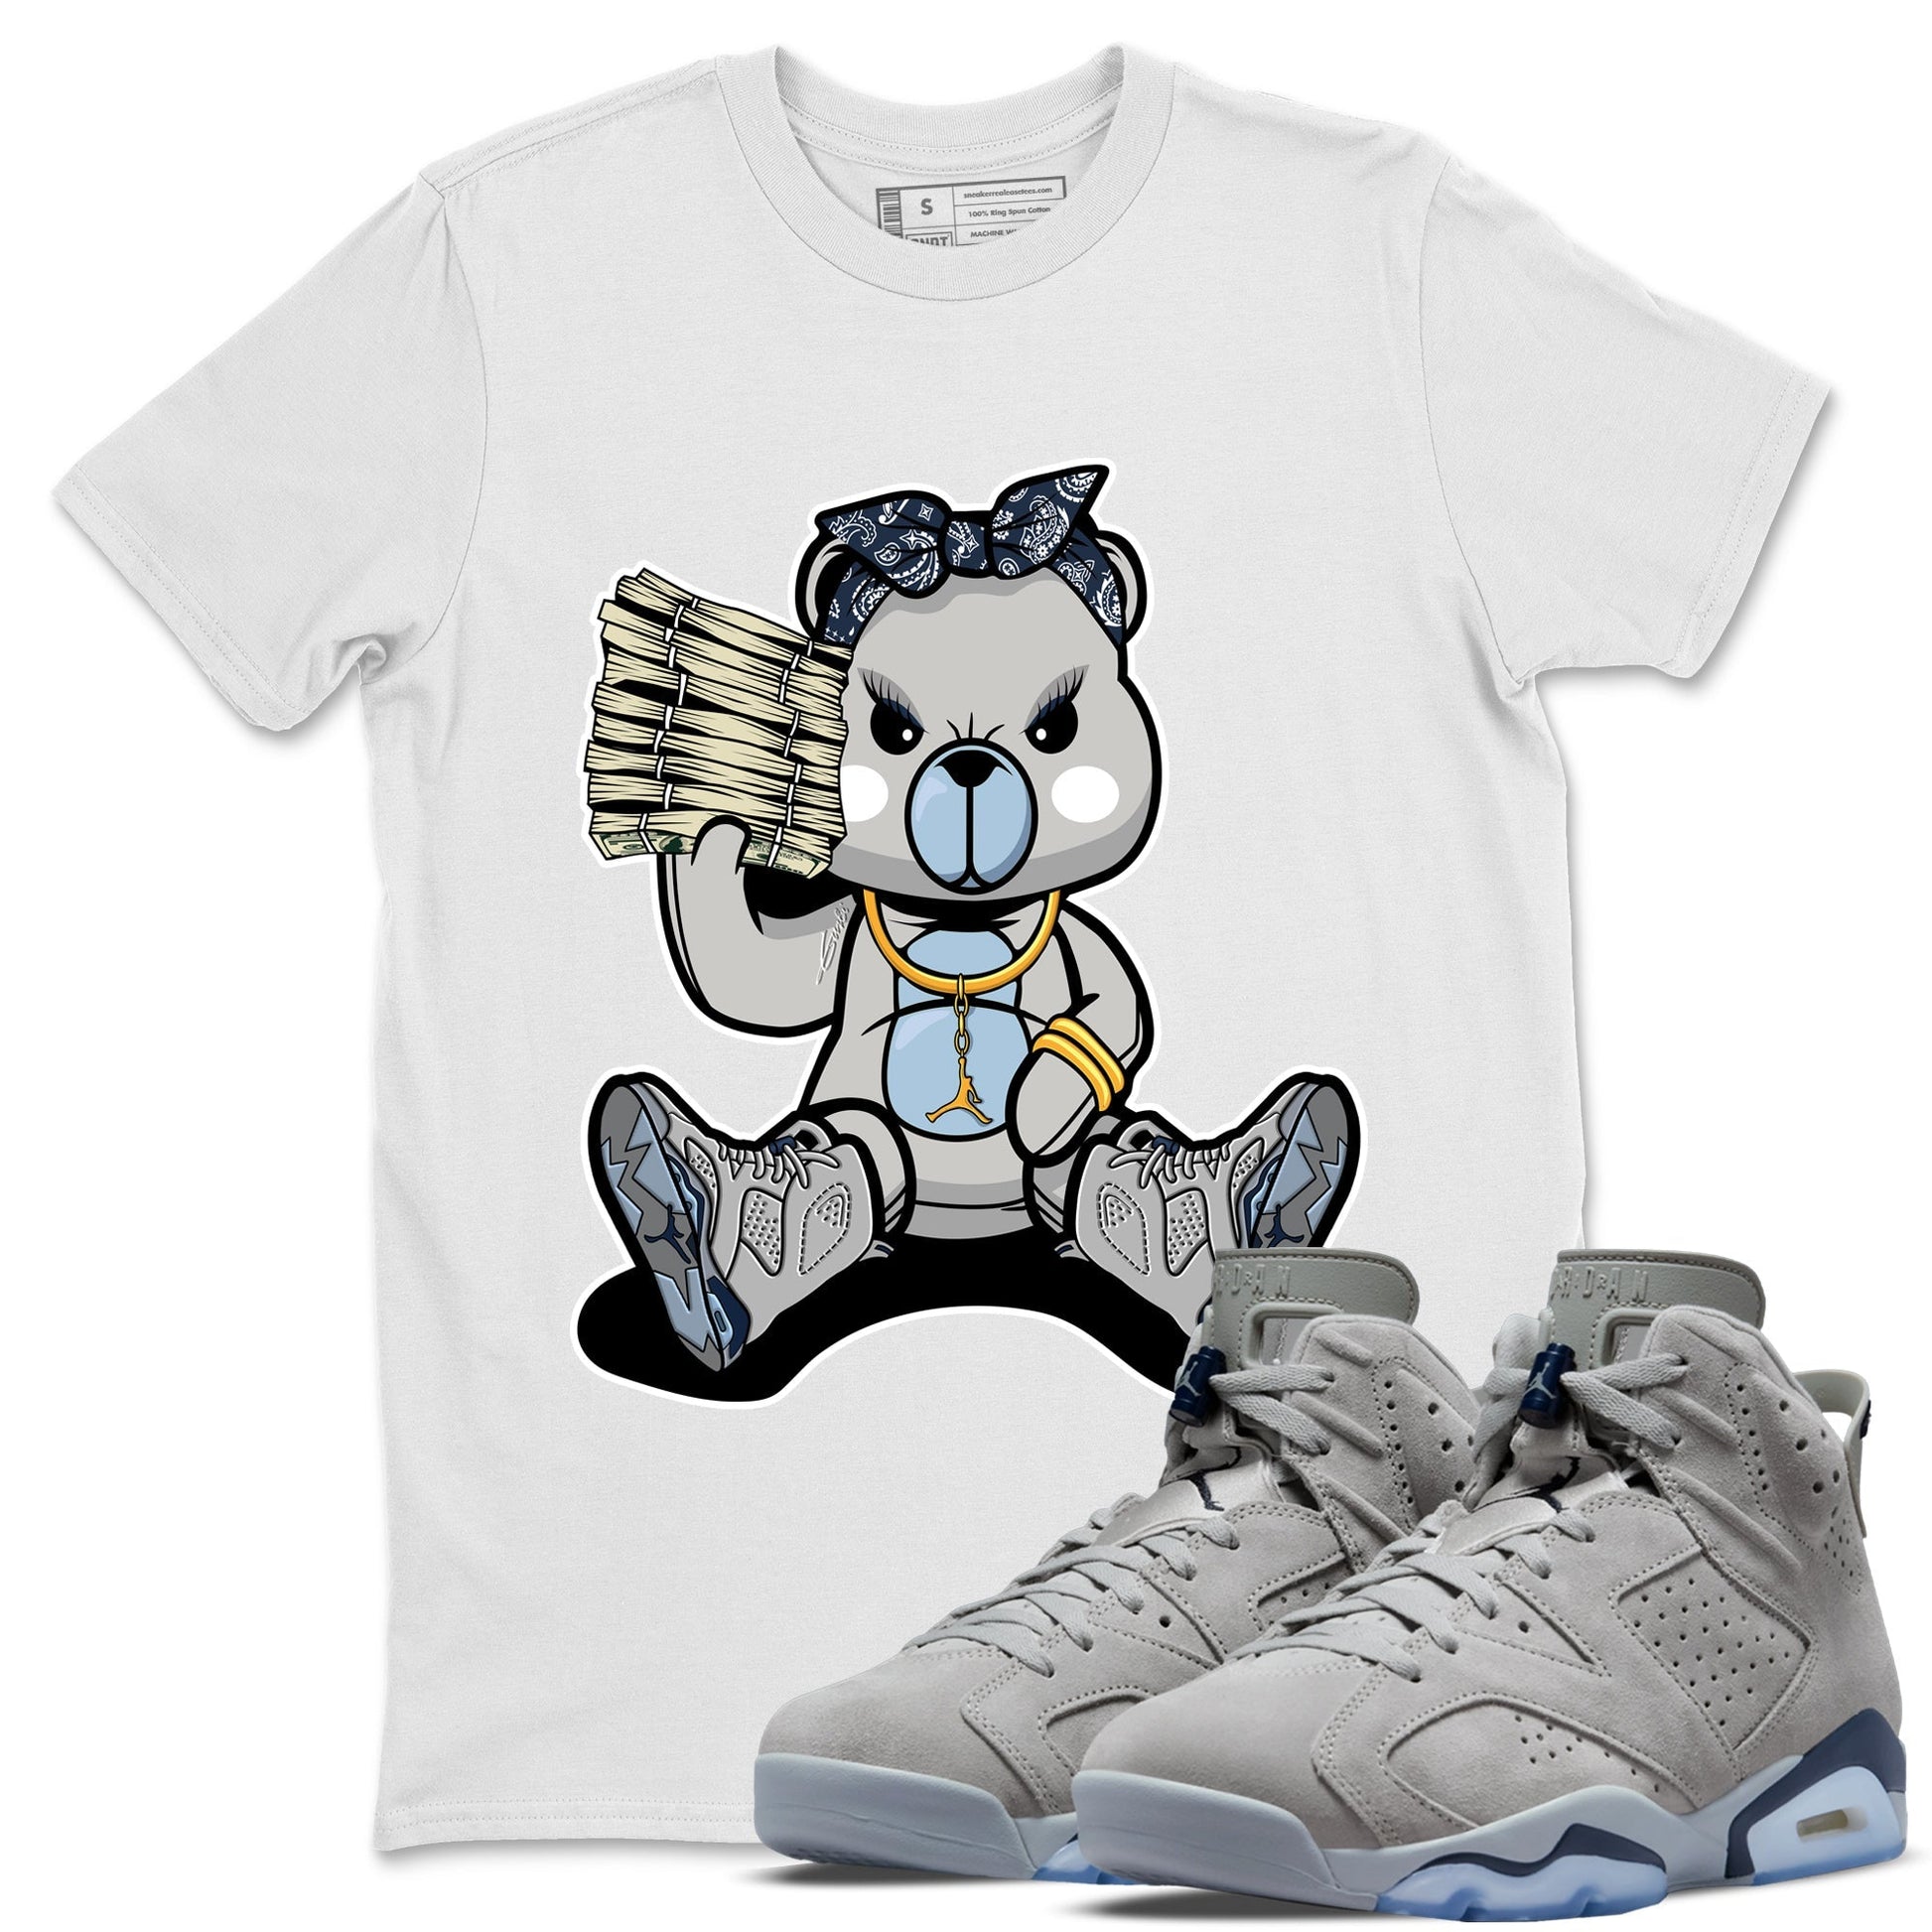 Jordan 6 Georgetown Sneaker Match Tees Bad Baby Bear Sneaker Tees Jordan 6 Georgetown Sneaker Release Tees Unisex Shirts